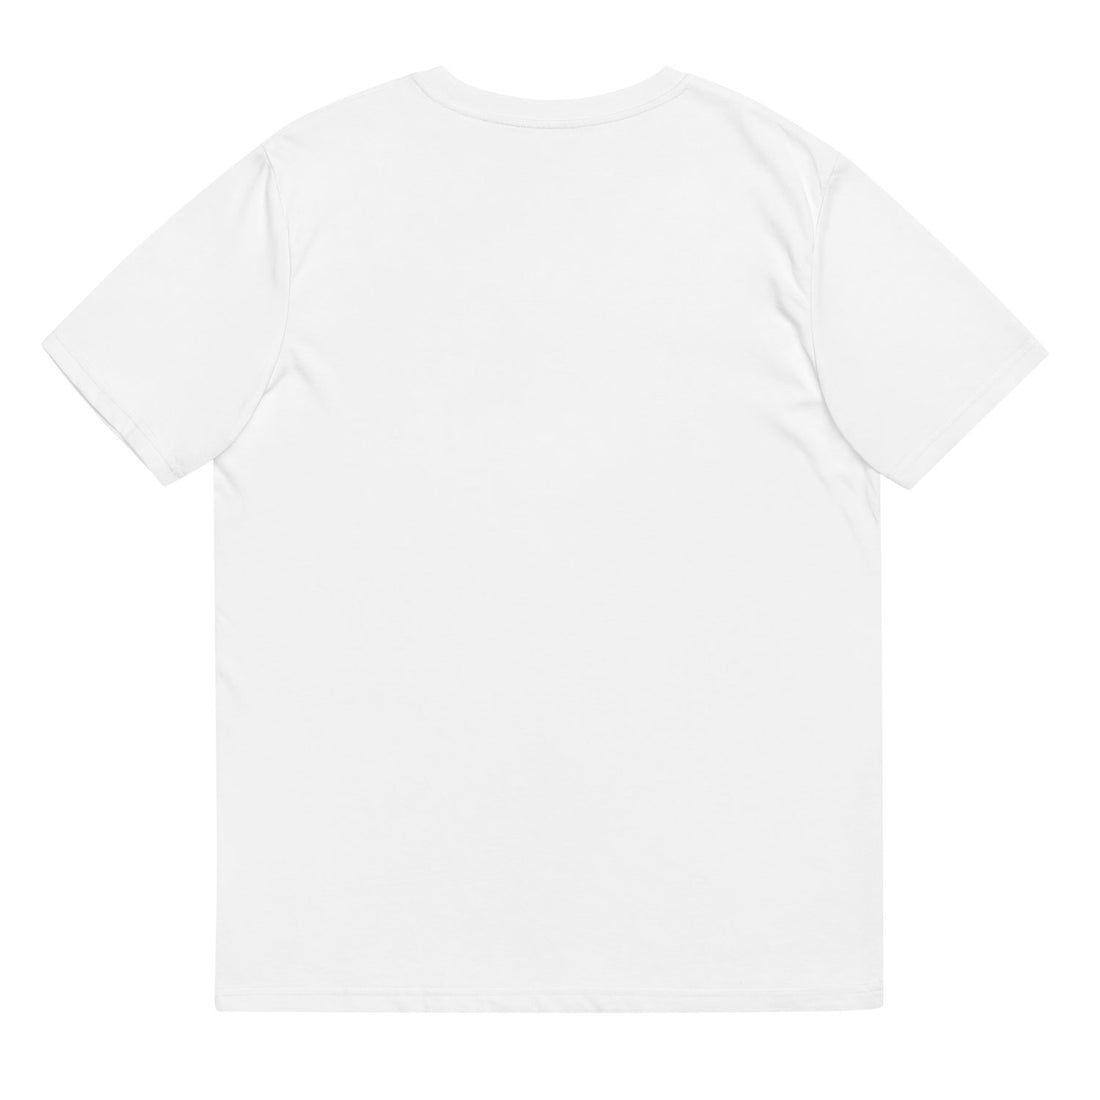 dai stablecoin whitepaper tshirt